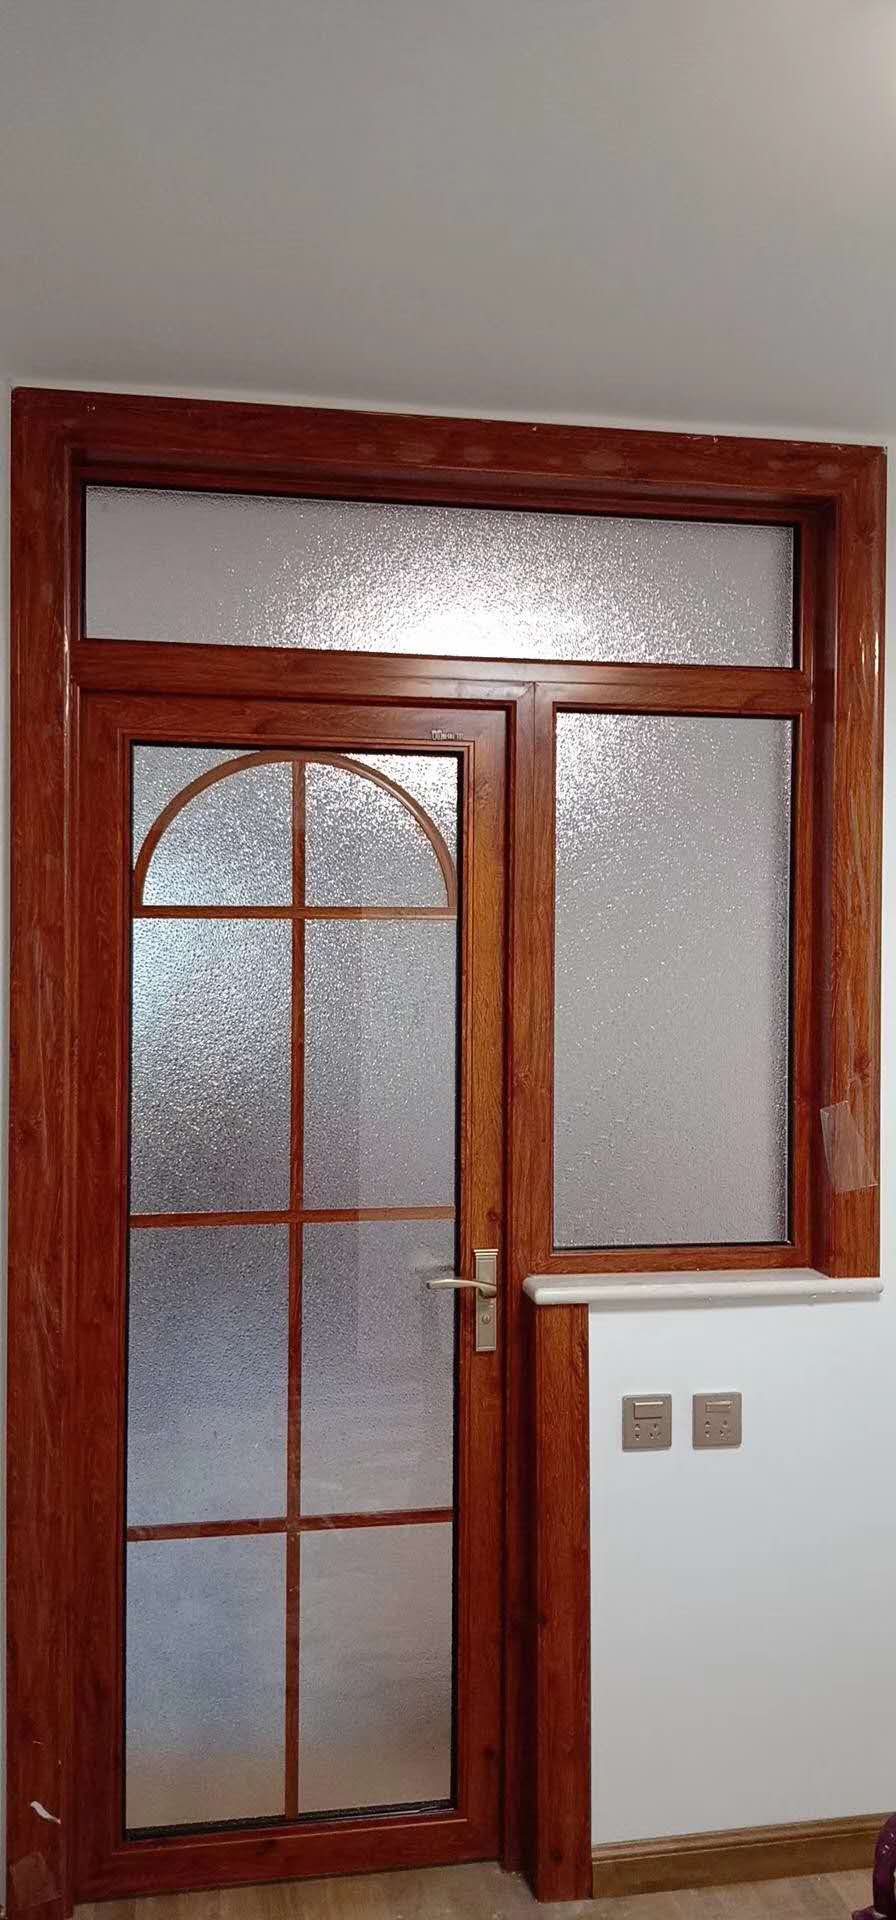 门和窗连在一起效果图图片